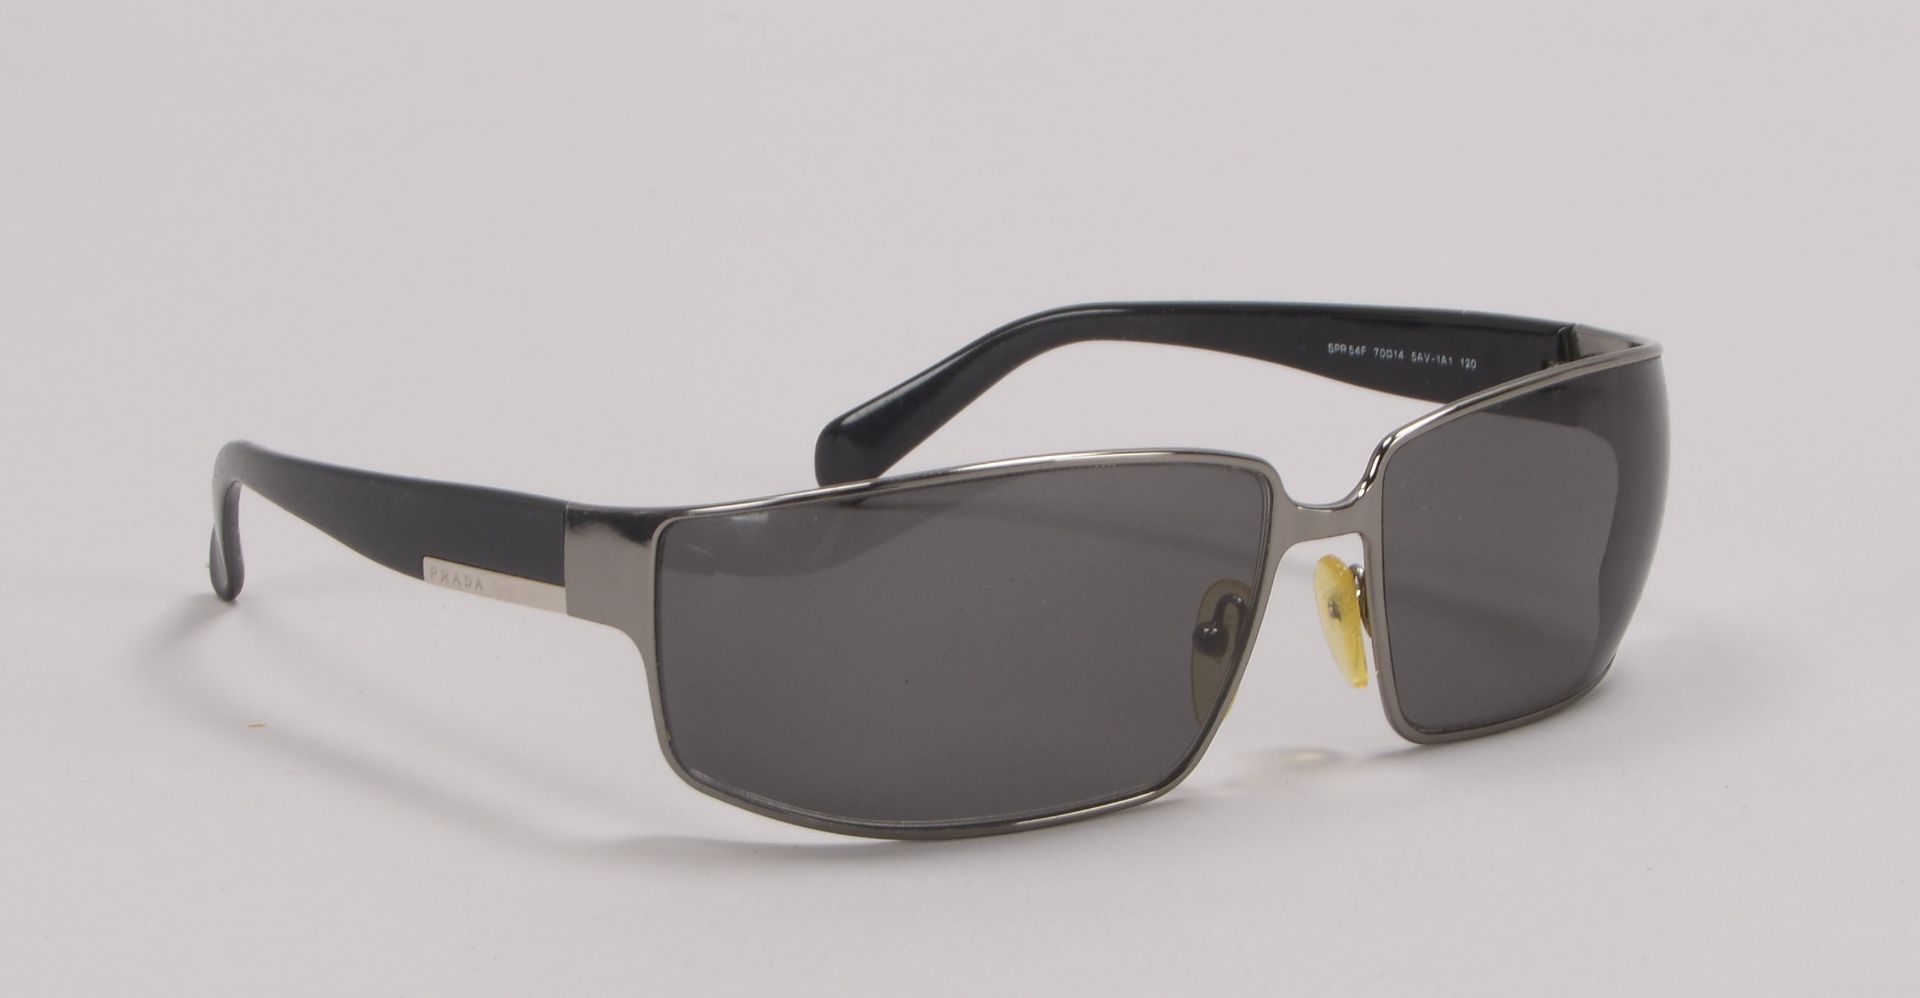 Prada/Italien, Designer-Sonnenbrille, im Etui - in gepflegtem Zustand; Rahmenbreite 14 cm - Bild 2 aus 3